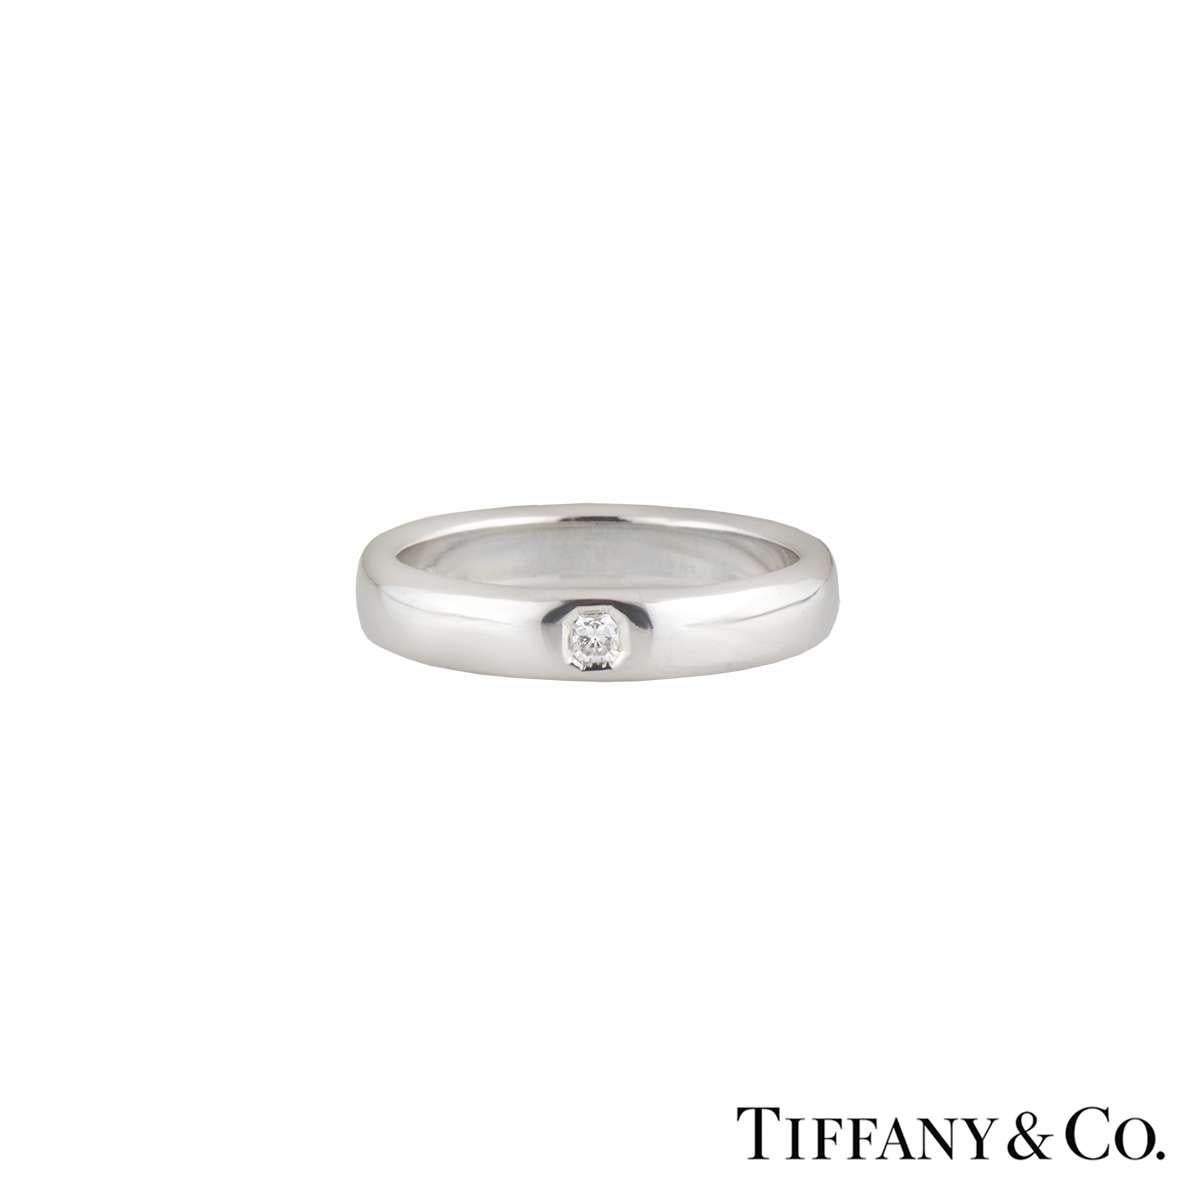 Ein stilvolles Tiffany & Co Diamond Wedding Band in Platin aus der Lucida Kollektion. Der Ring ist mit einem in der Lünette gefassten Diamanten im Lucida-Schliff mit einem Gesamtgewicht von 0,05ct, Farbe G und Reinheit VS ausgestattet. Der 4 mm